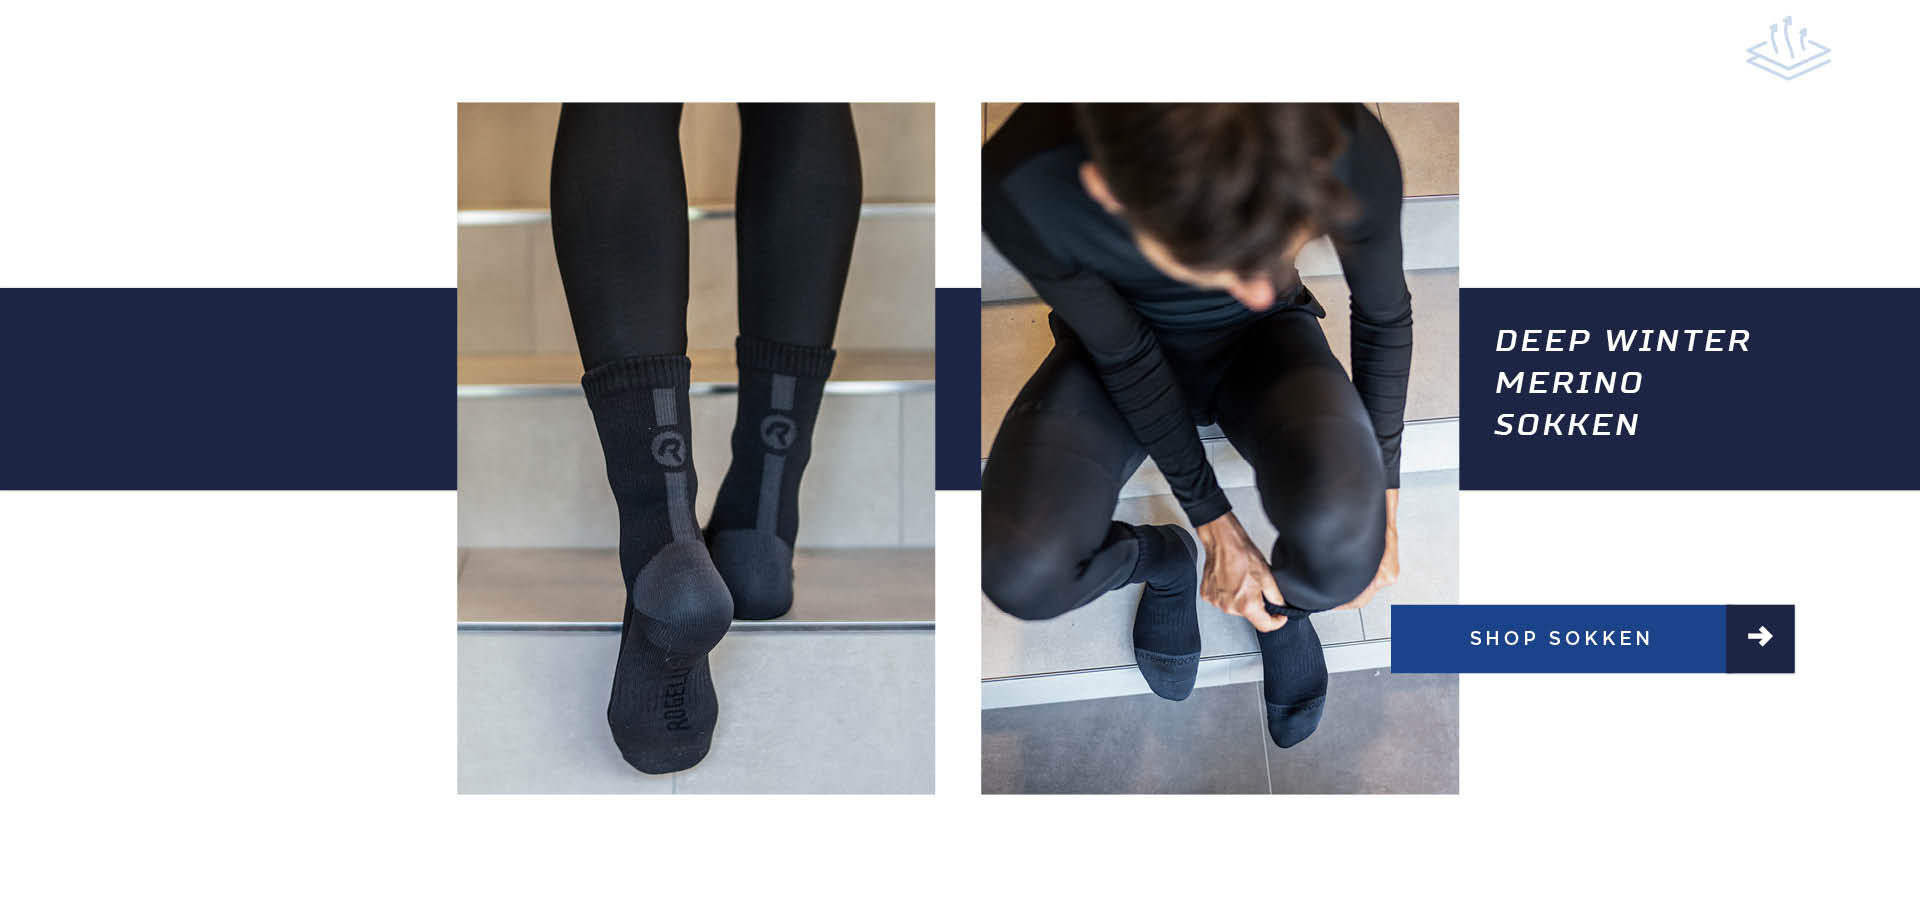 Fietser staand en zittend op een trap met de deep winter merino sokken van Rogelli om zijn voeten